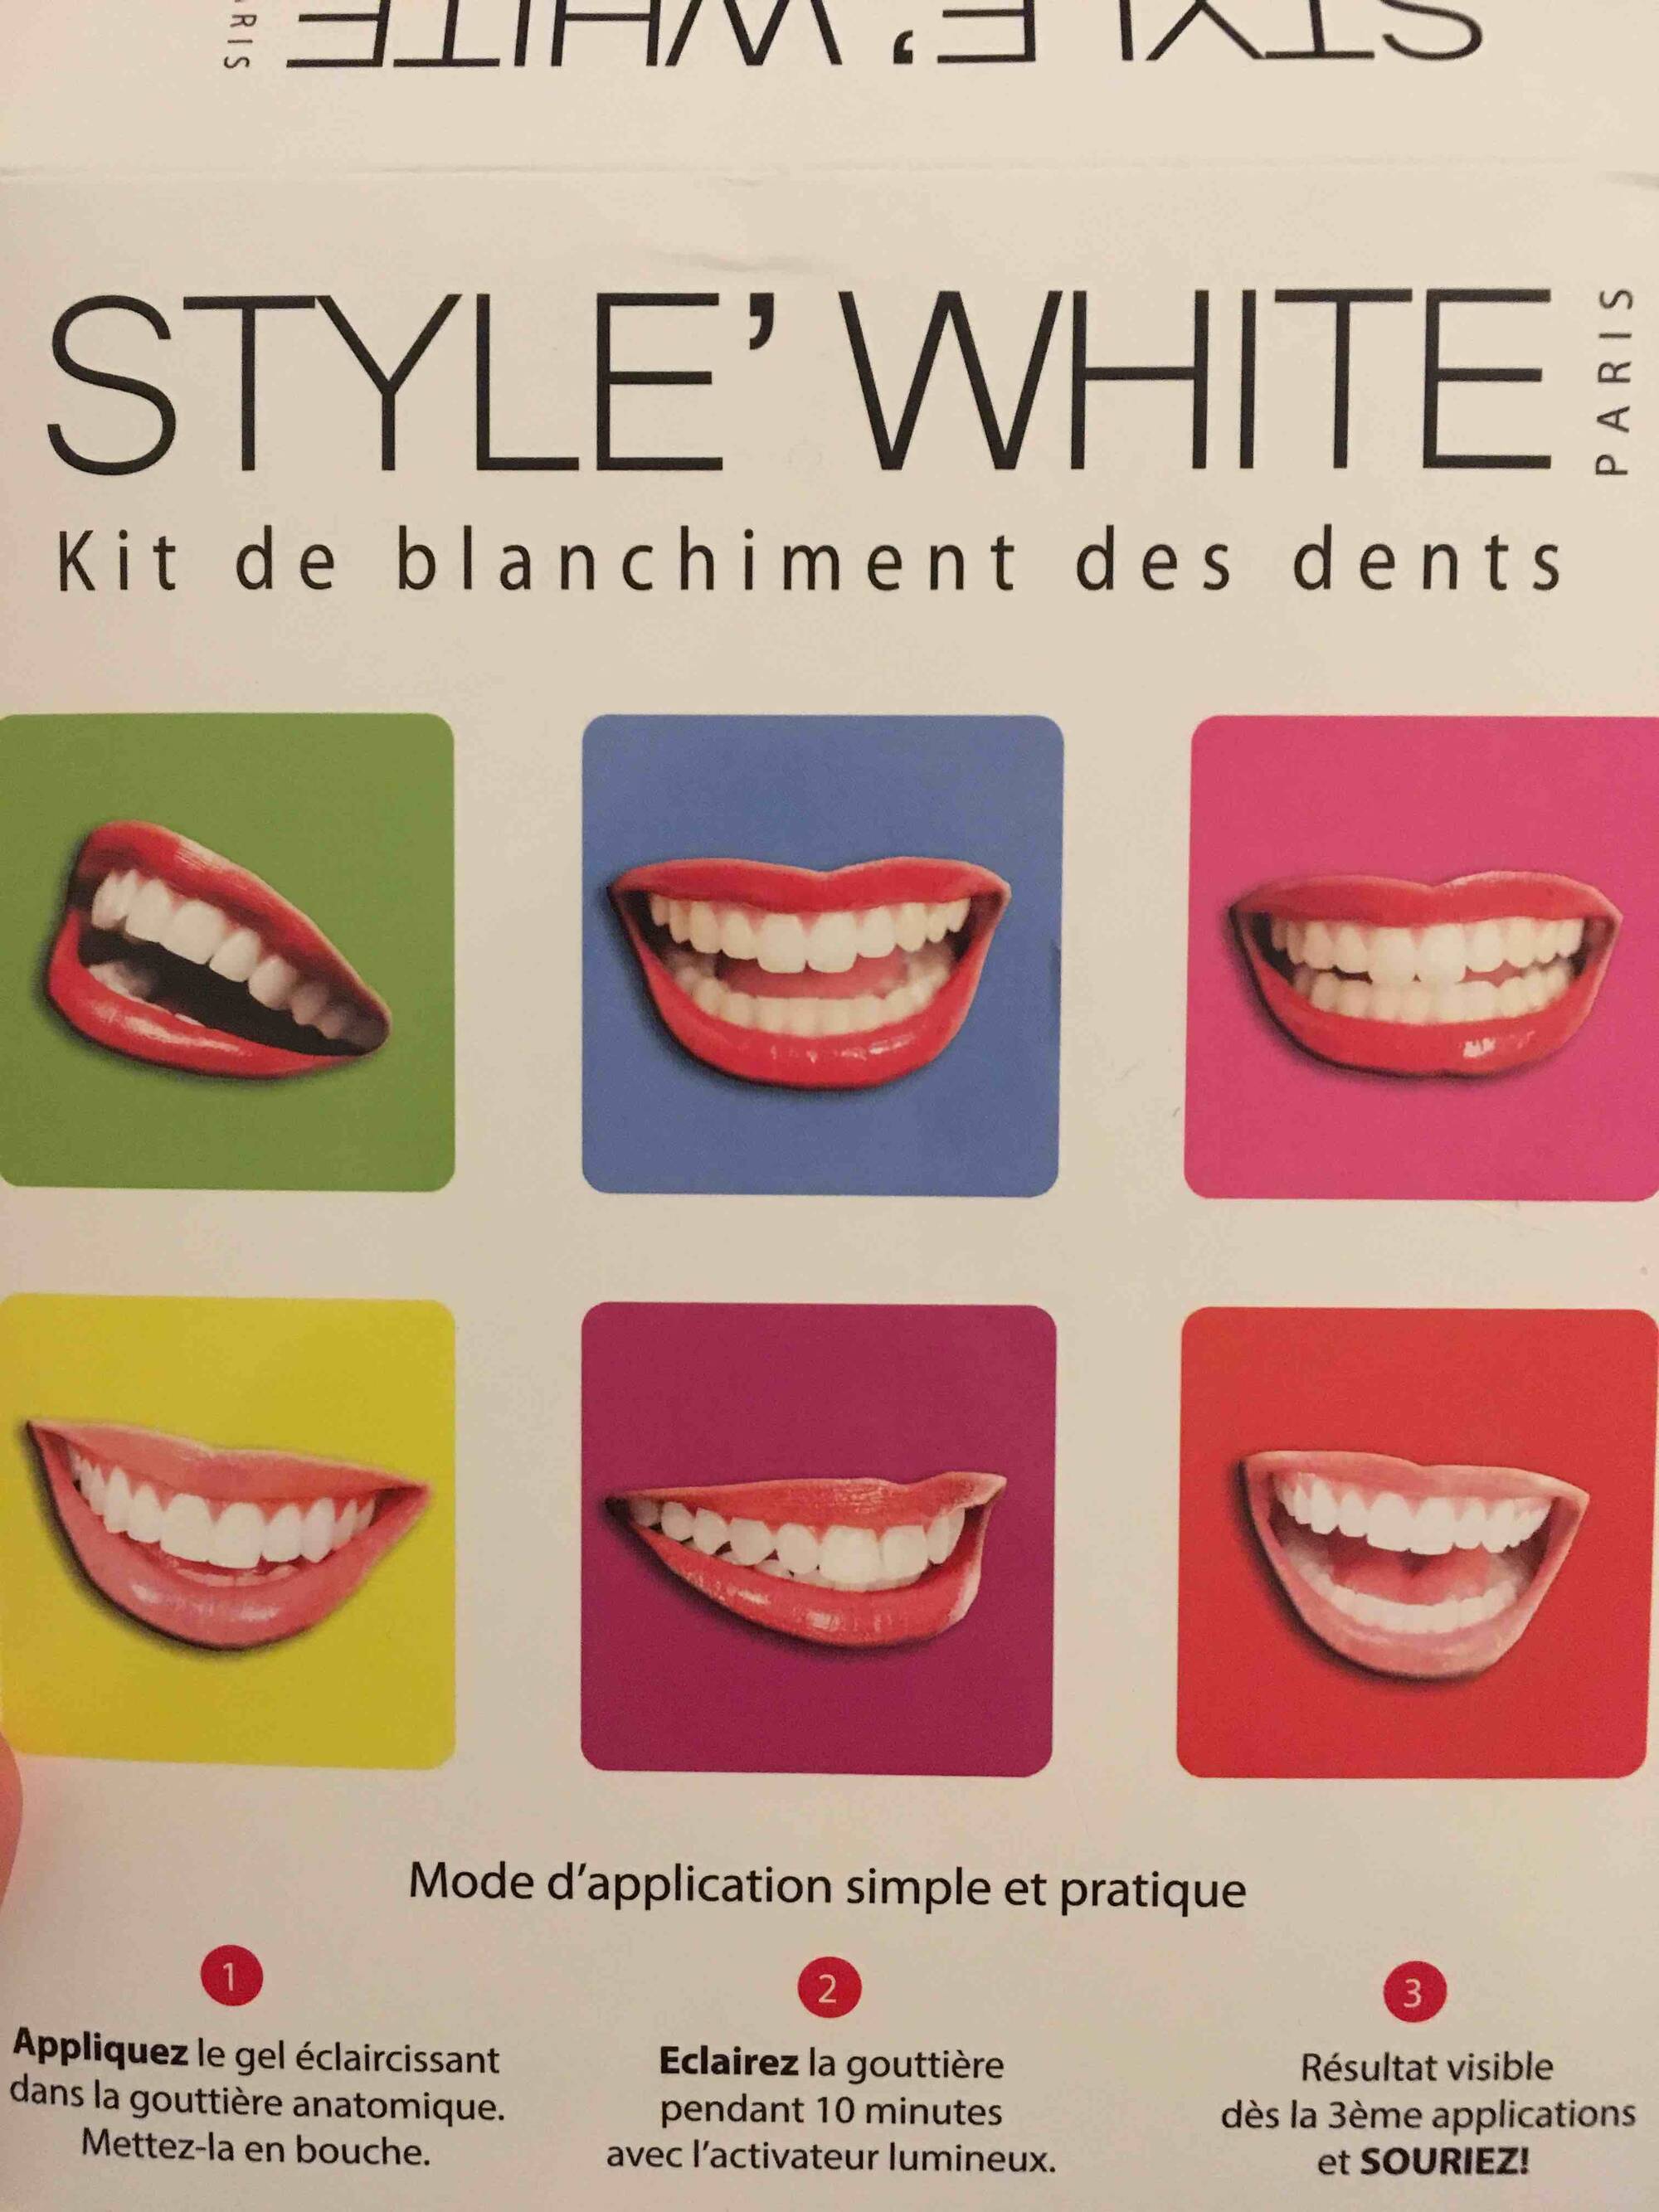 ᐅ Prix d'un blanchiment dentaire → Comparatif France vs Etranger